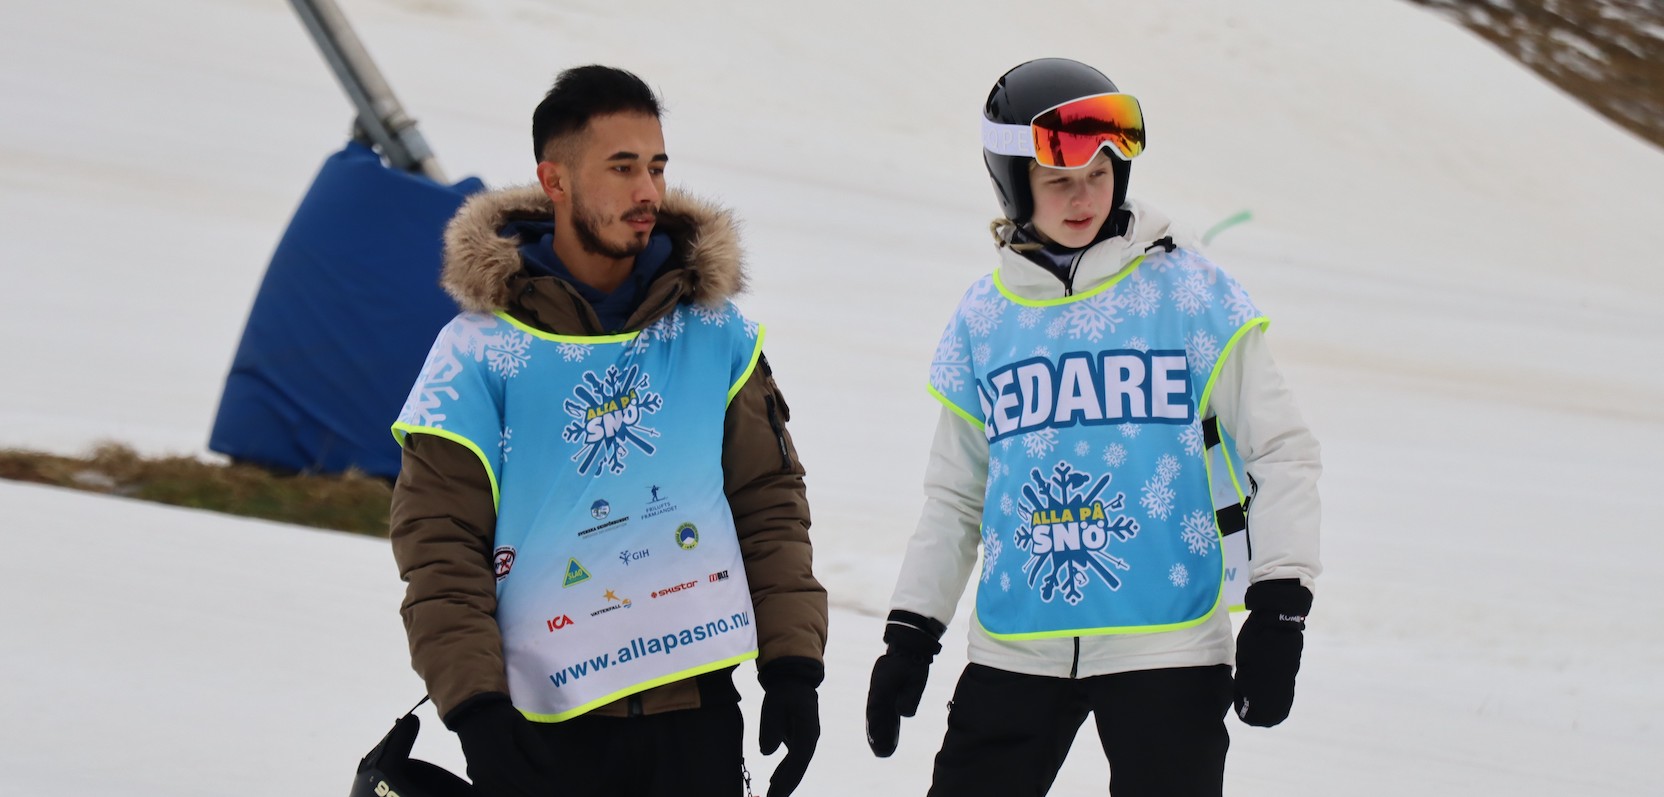 En tjej och en kille i 18-årsåldern står i en skidbacke klädda i skidkläder, utrustning samt västar med texten "Alla på snö"